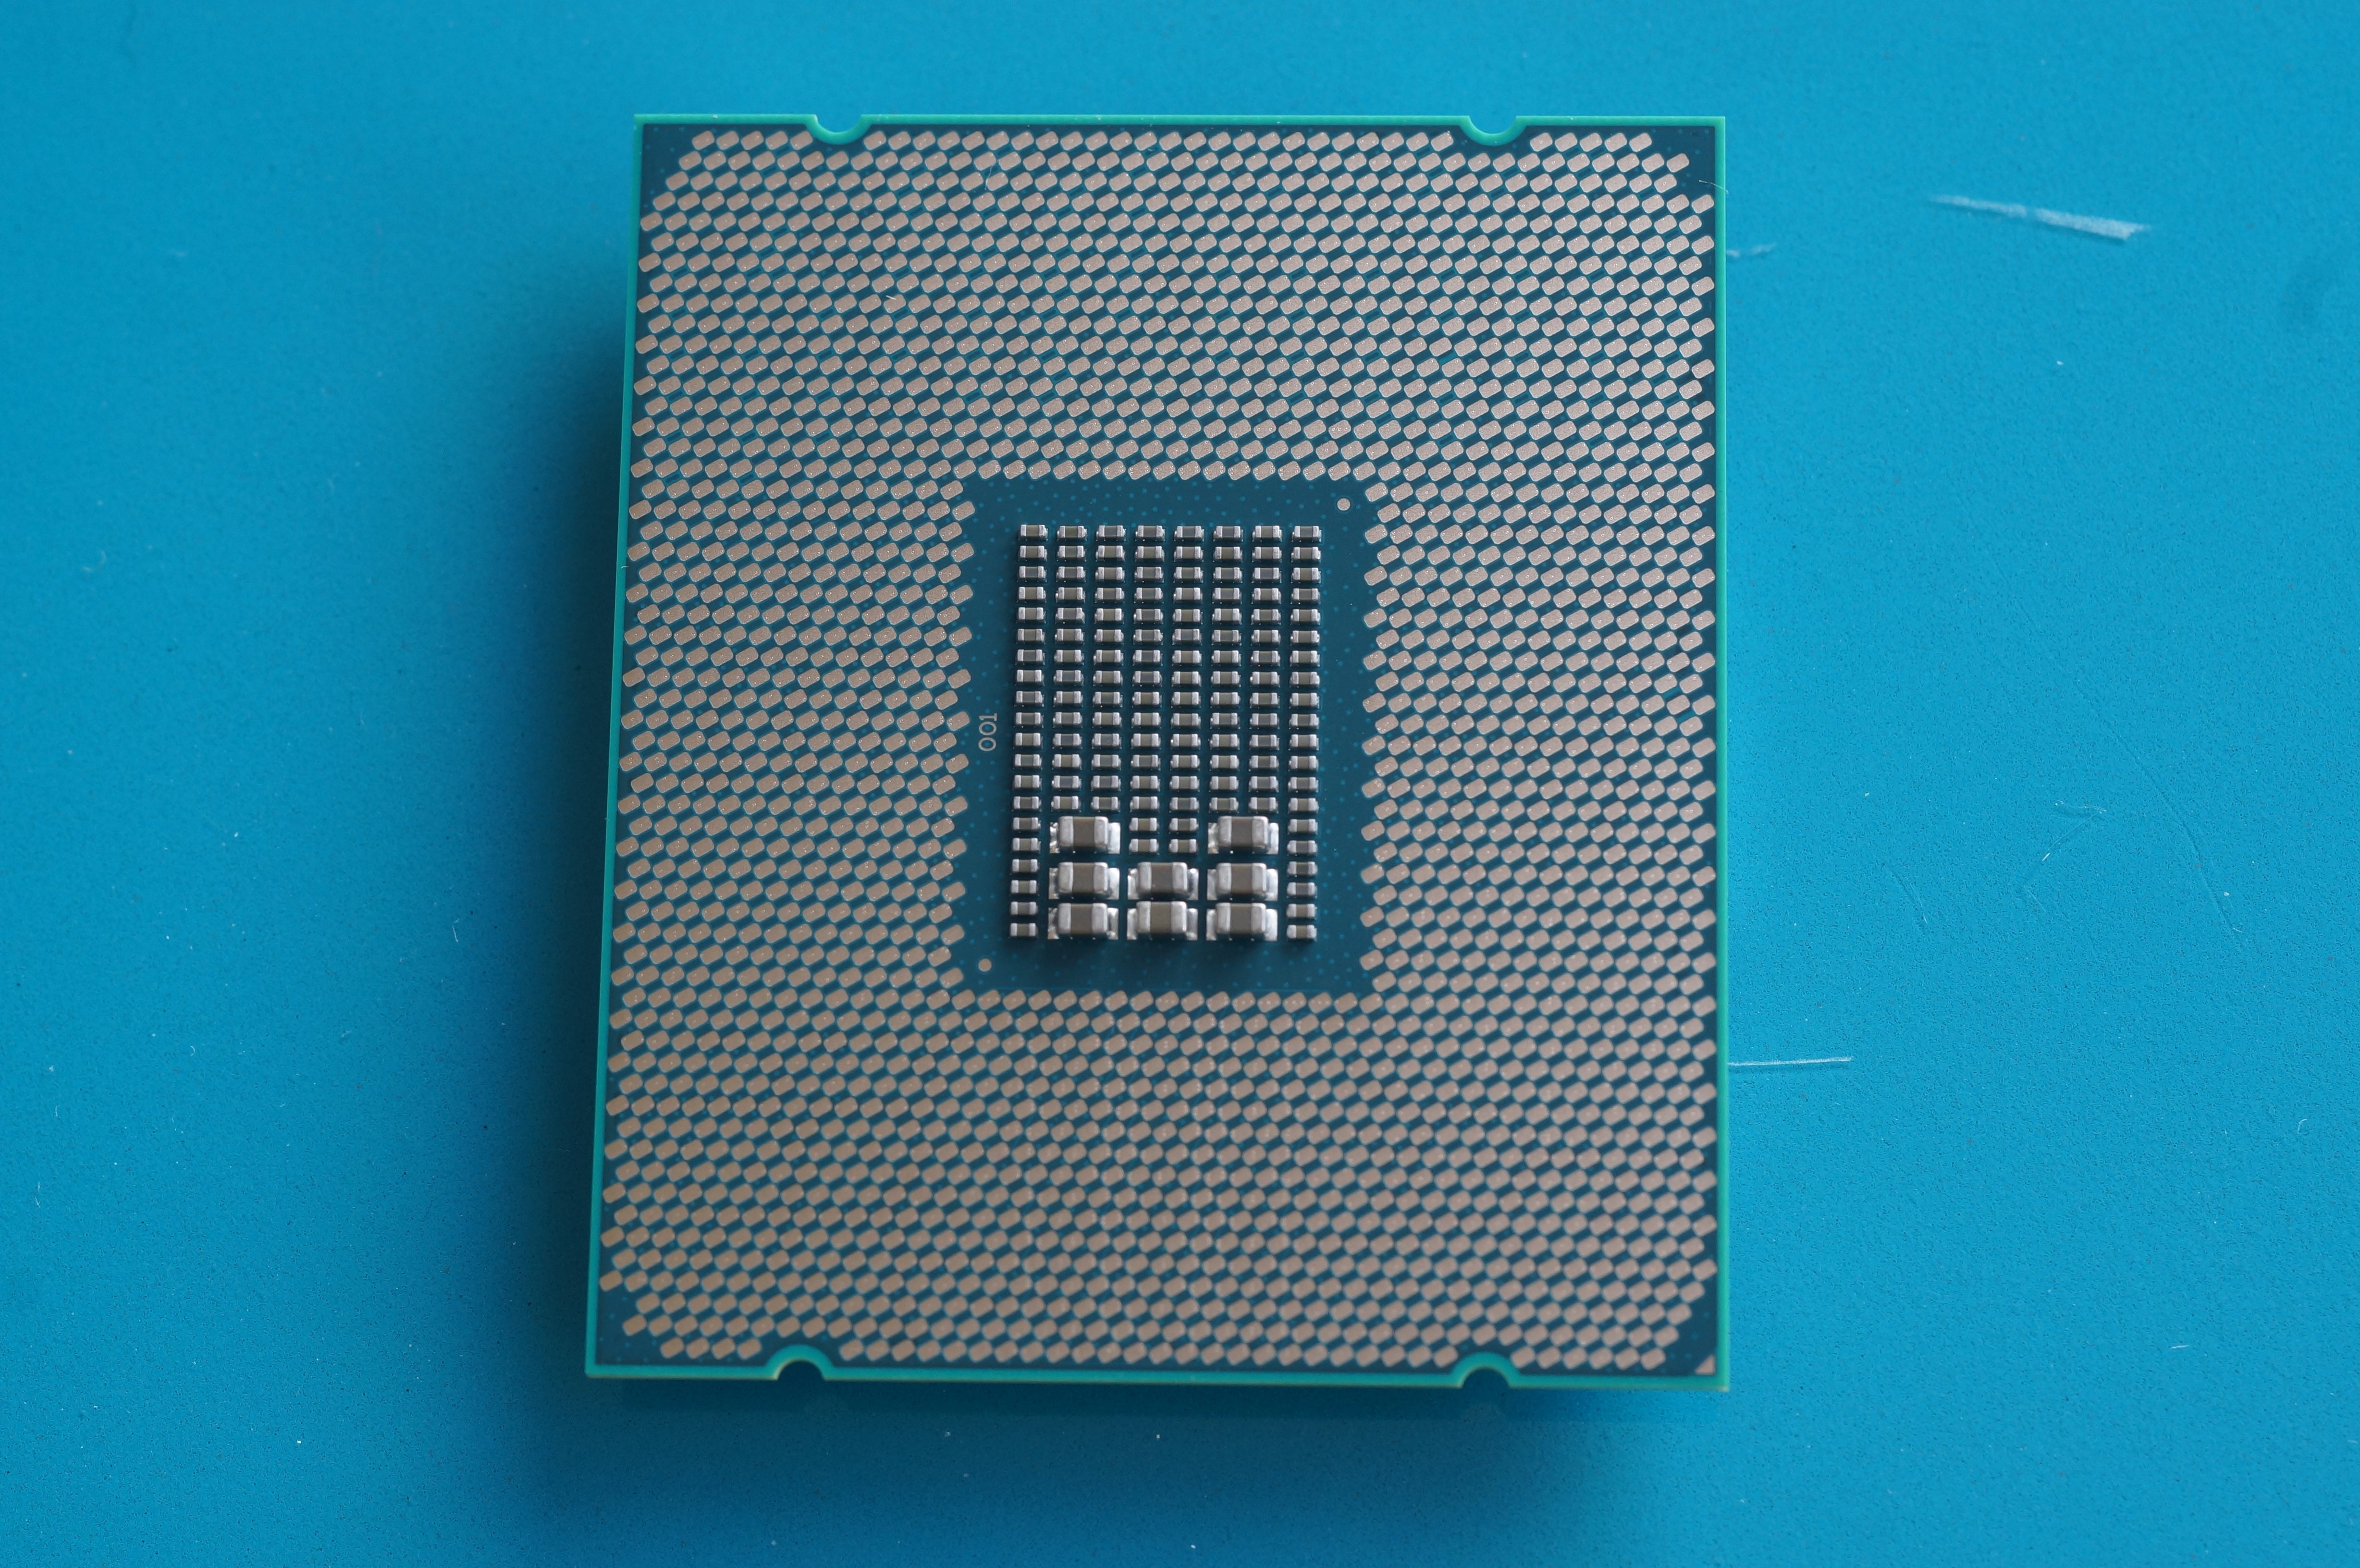 Core i5 4400. Intel Core i7-6950x. I7 6950x в сокете. Intel Core i7-6950x extreme Edition lga2011-3, 10 x 3000 МГЦ. Core i7-6950x extreme Edition.